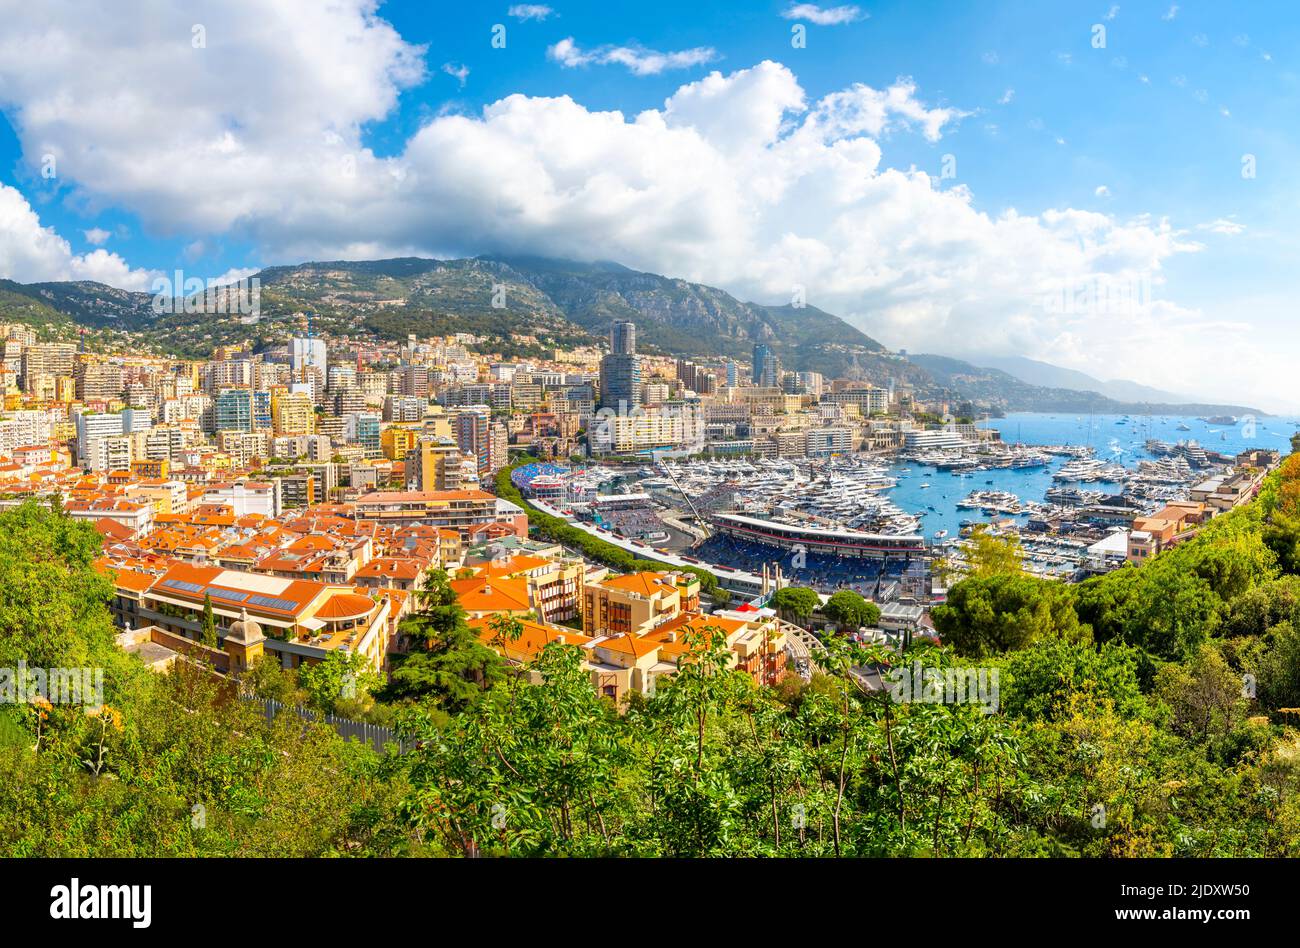 Vue sur le port animé, la ville, les montagnes et les tribunes remplies pendant le Grand Prix de Formule 1 de Monaco à Monte Carlo, Monaco. Banque D'Images